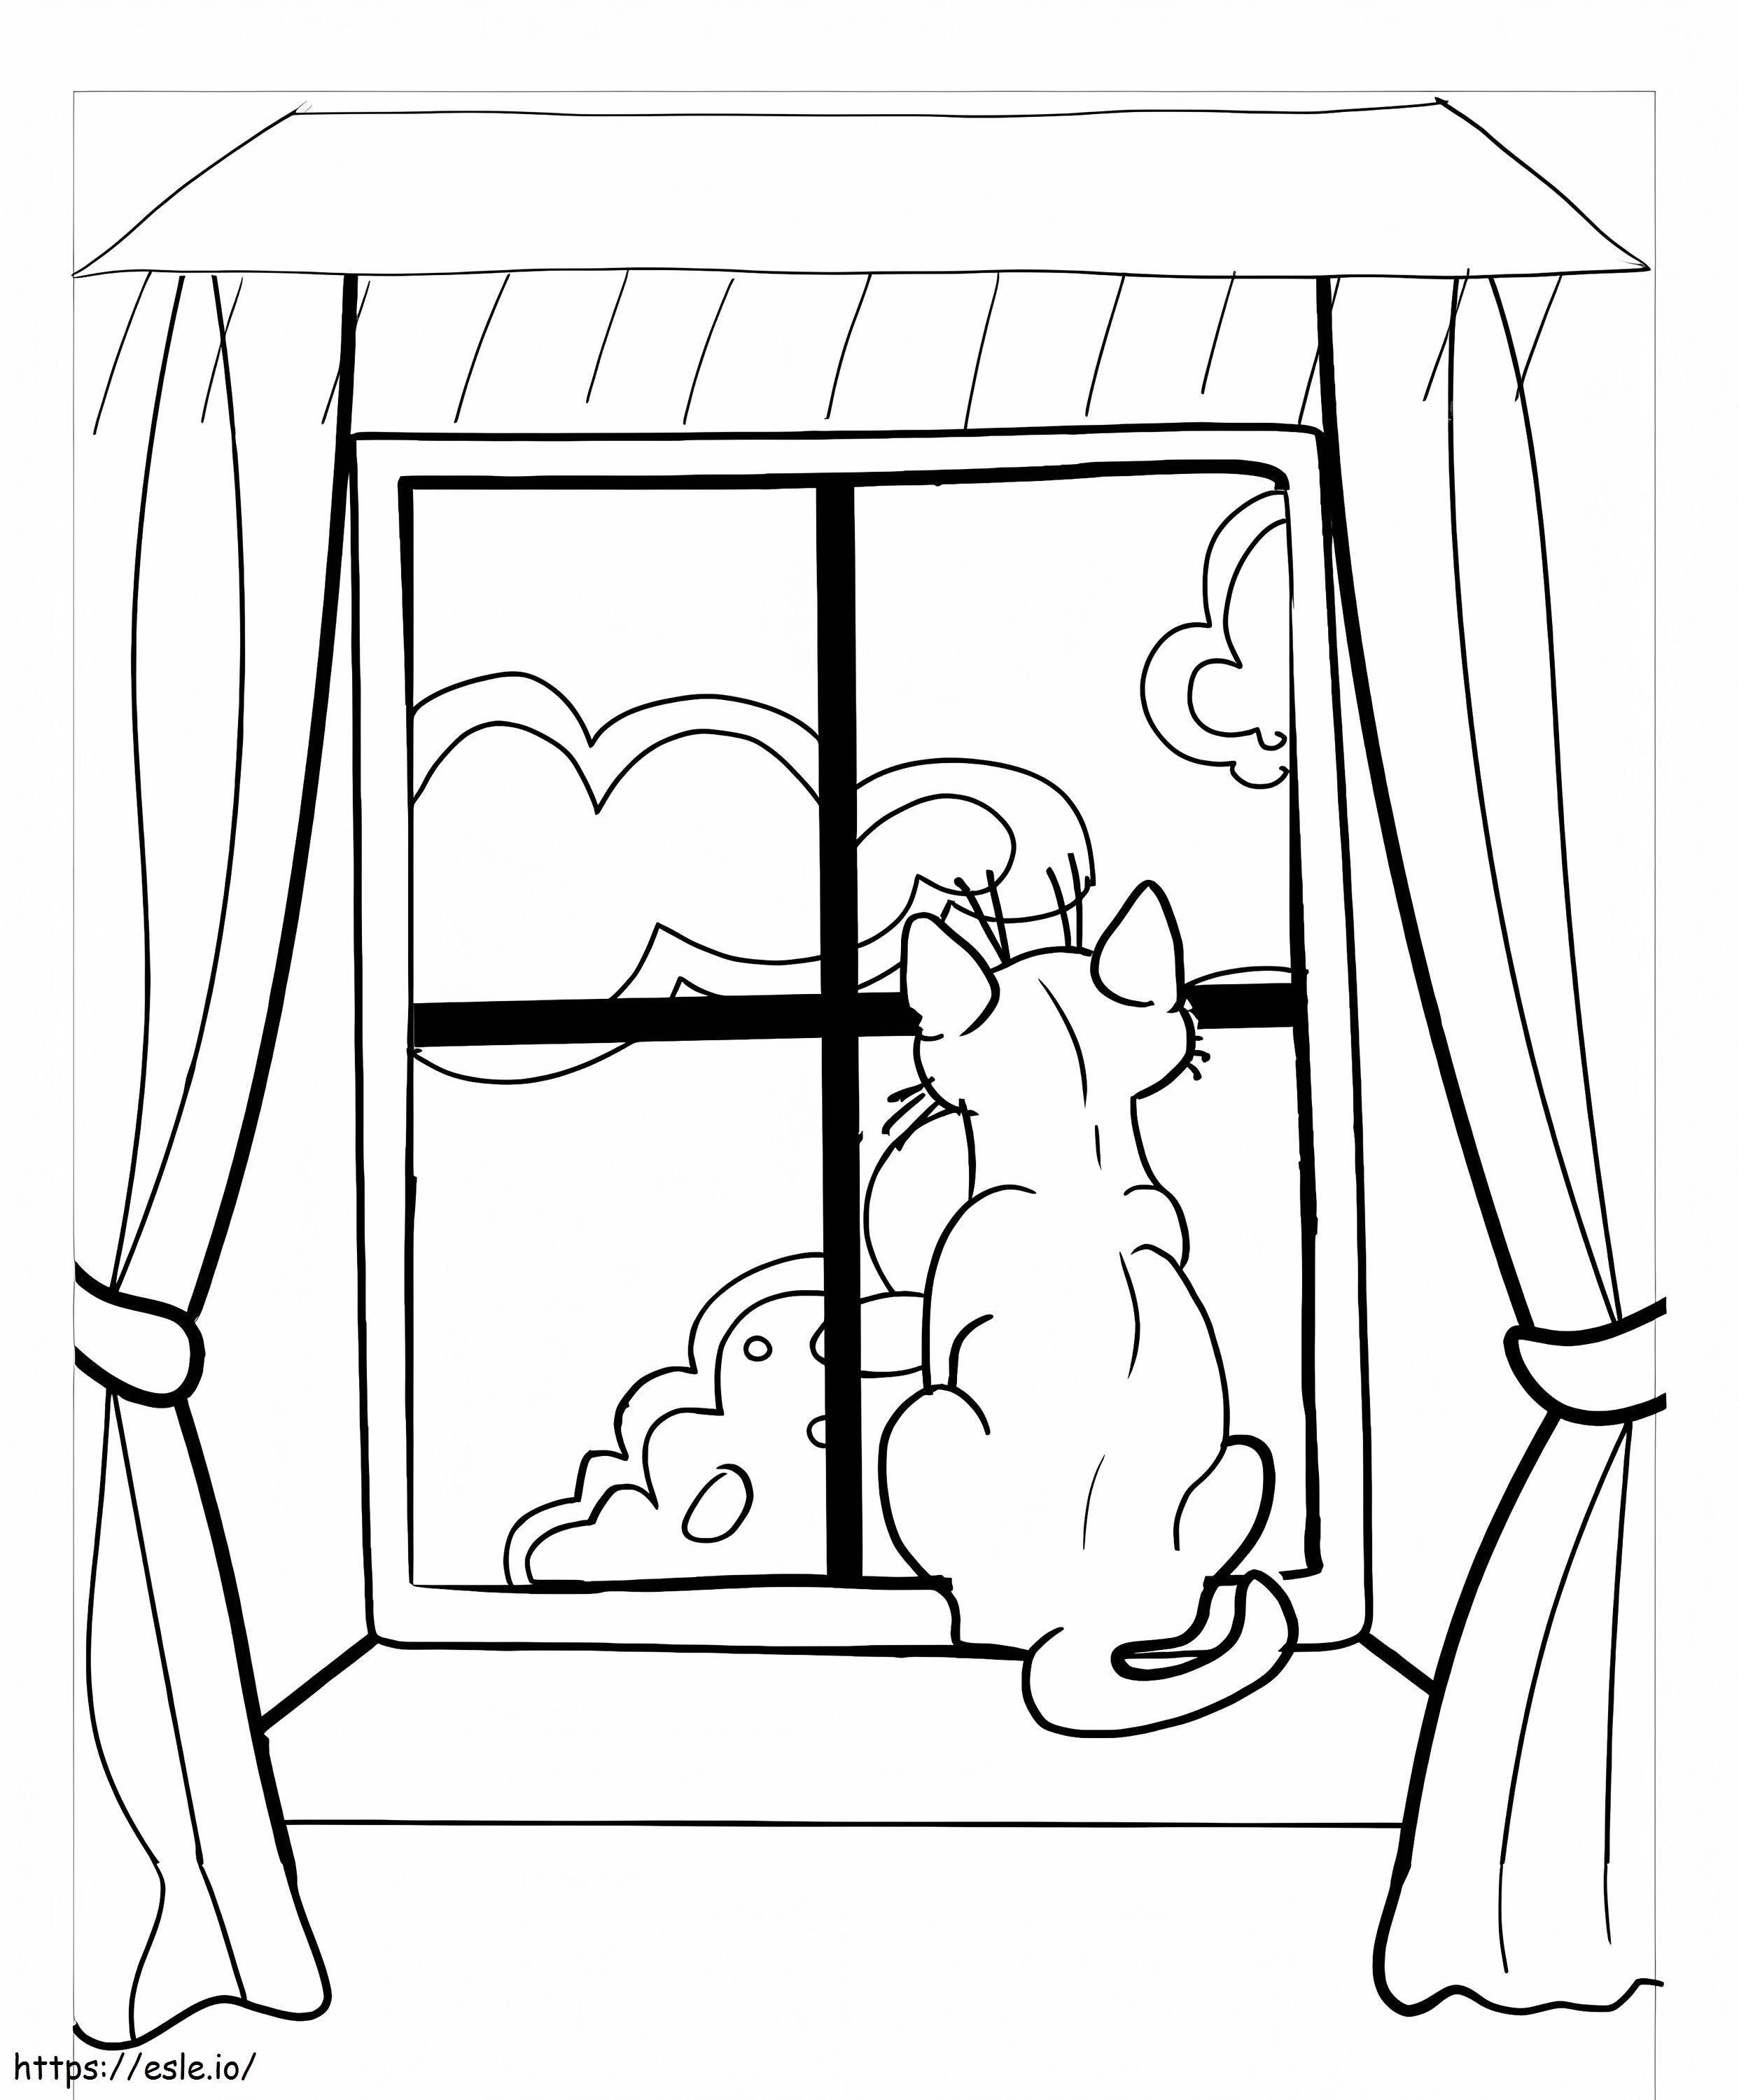 Pencerede Oturan Kedi boyama